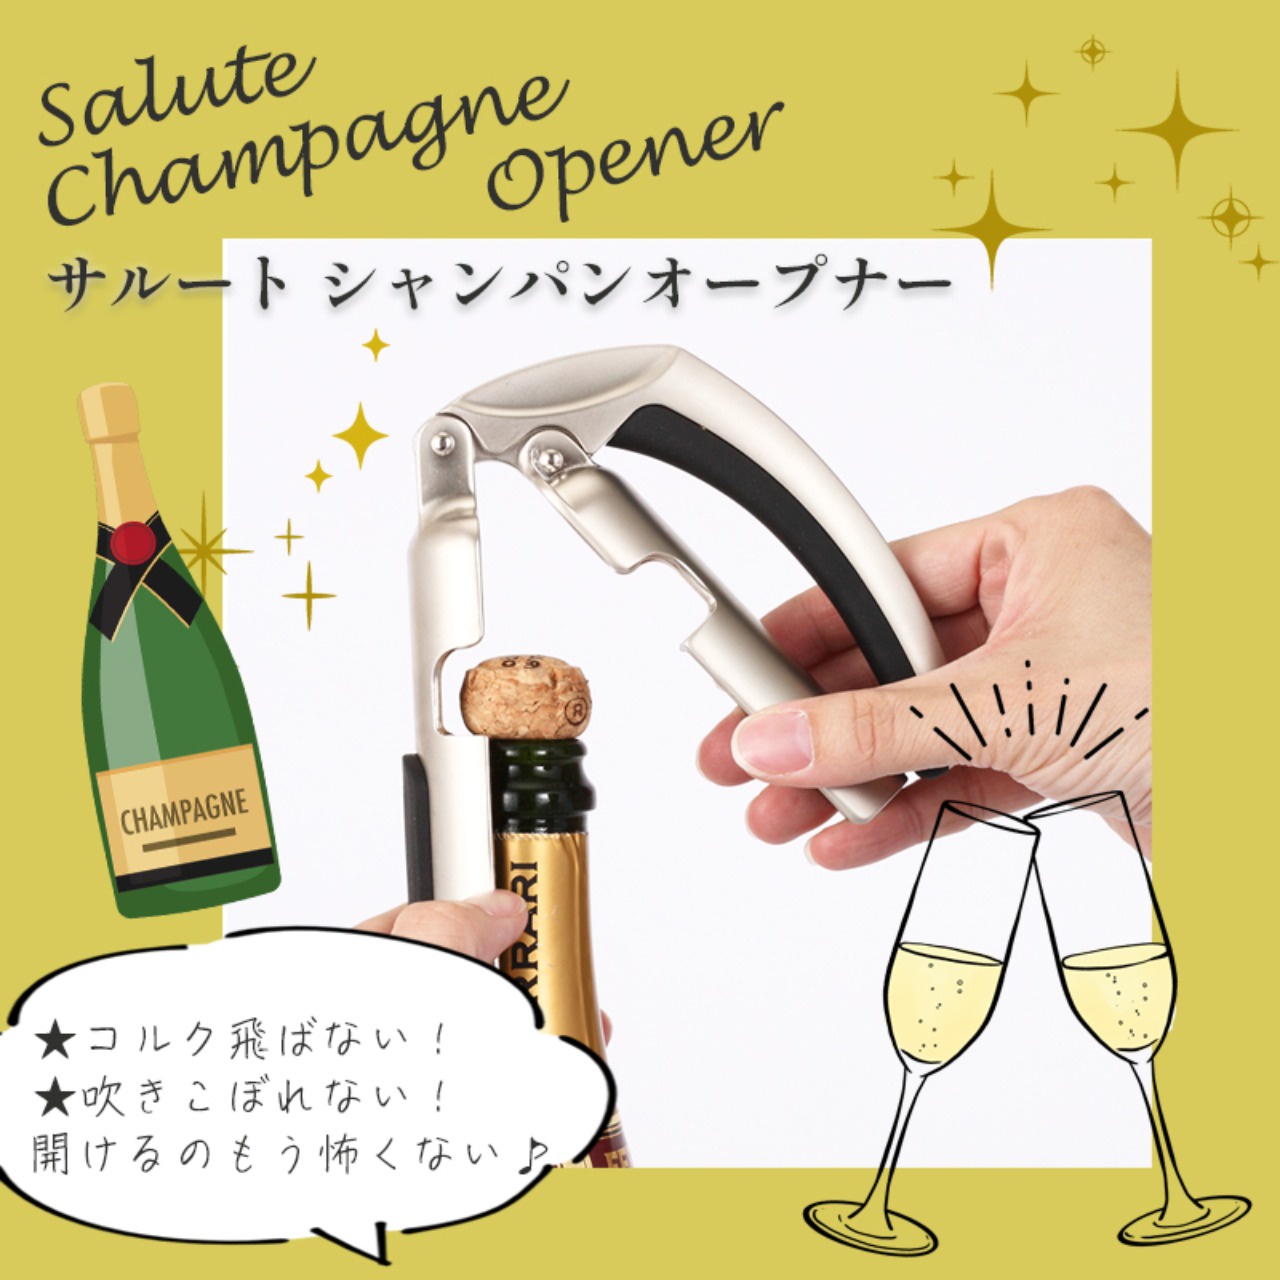 【amazonでも高評価!】サルート シャンパンオープナー